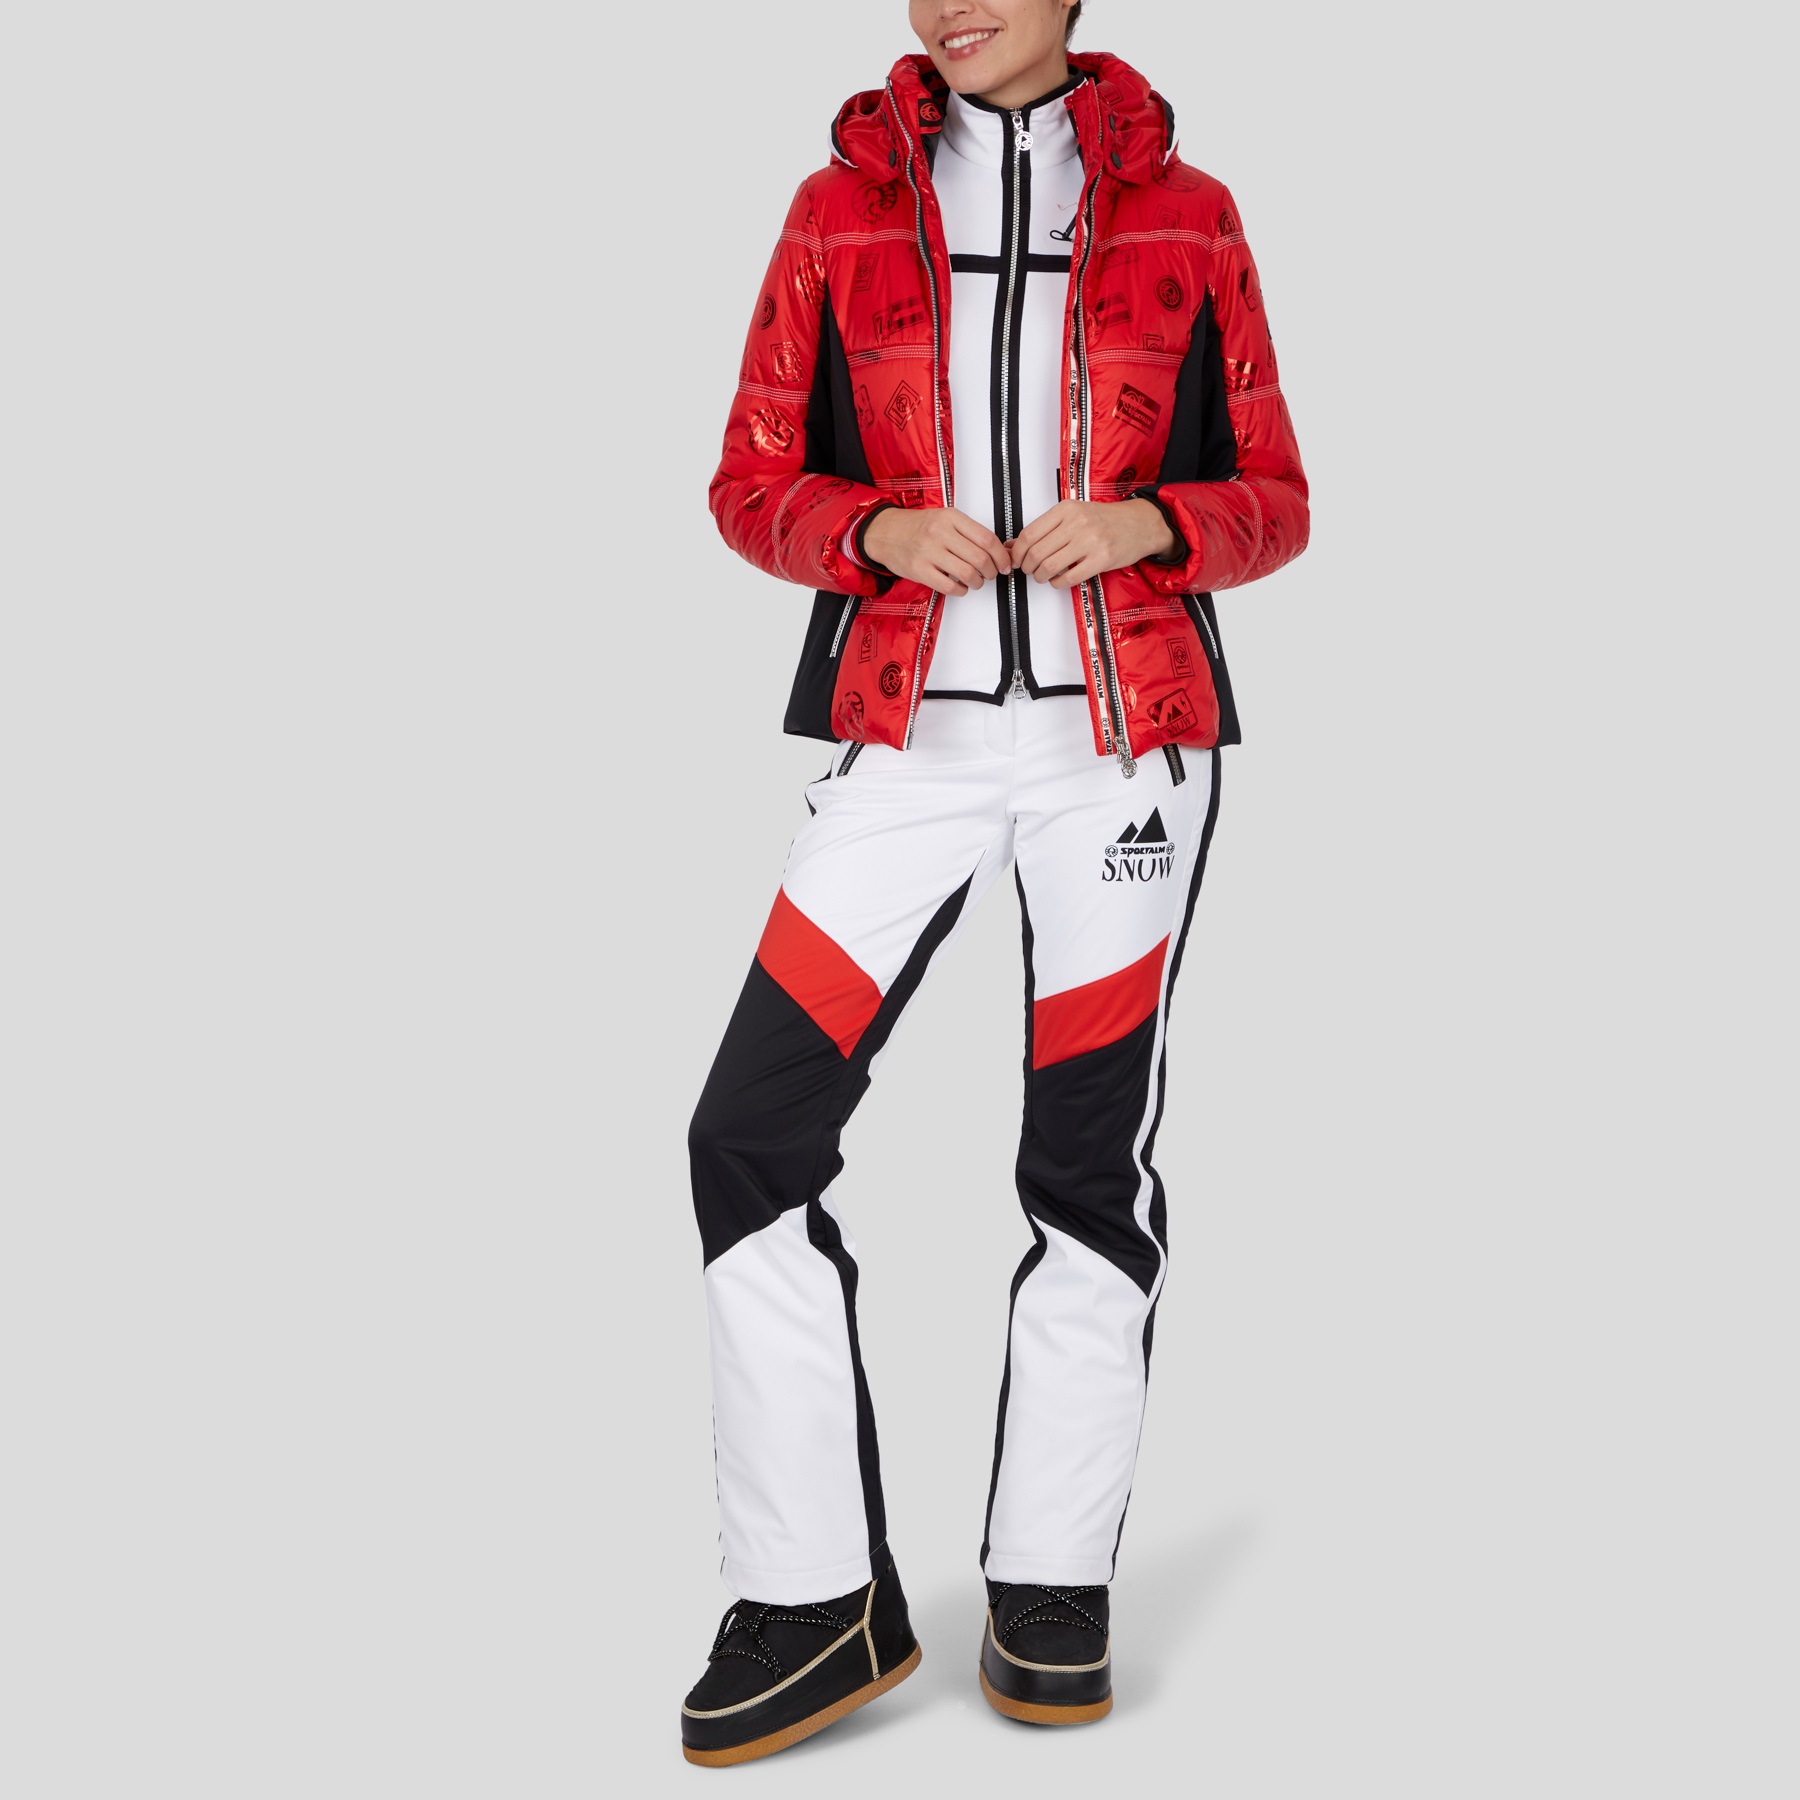 Geci Ski & Snow -  sportalm Pfiati 902234141-43